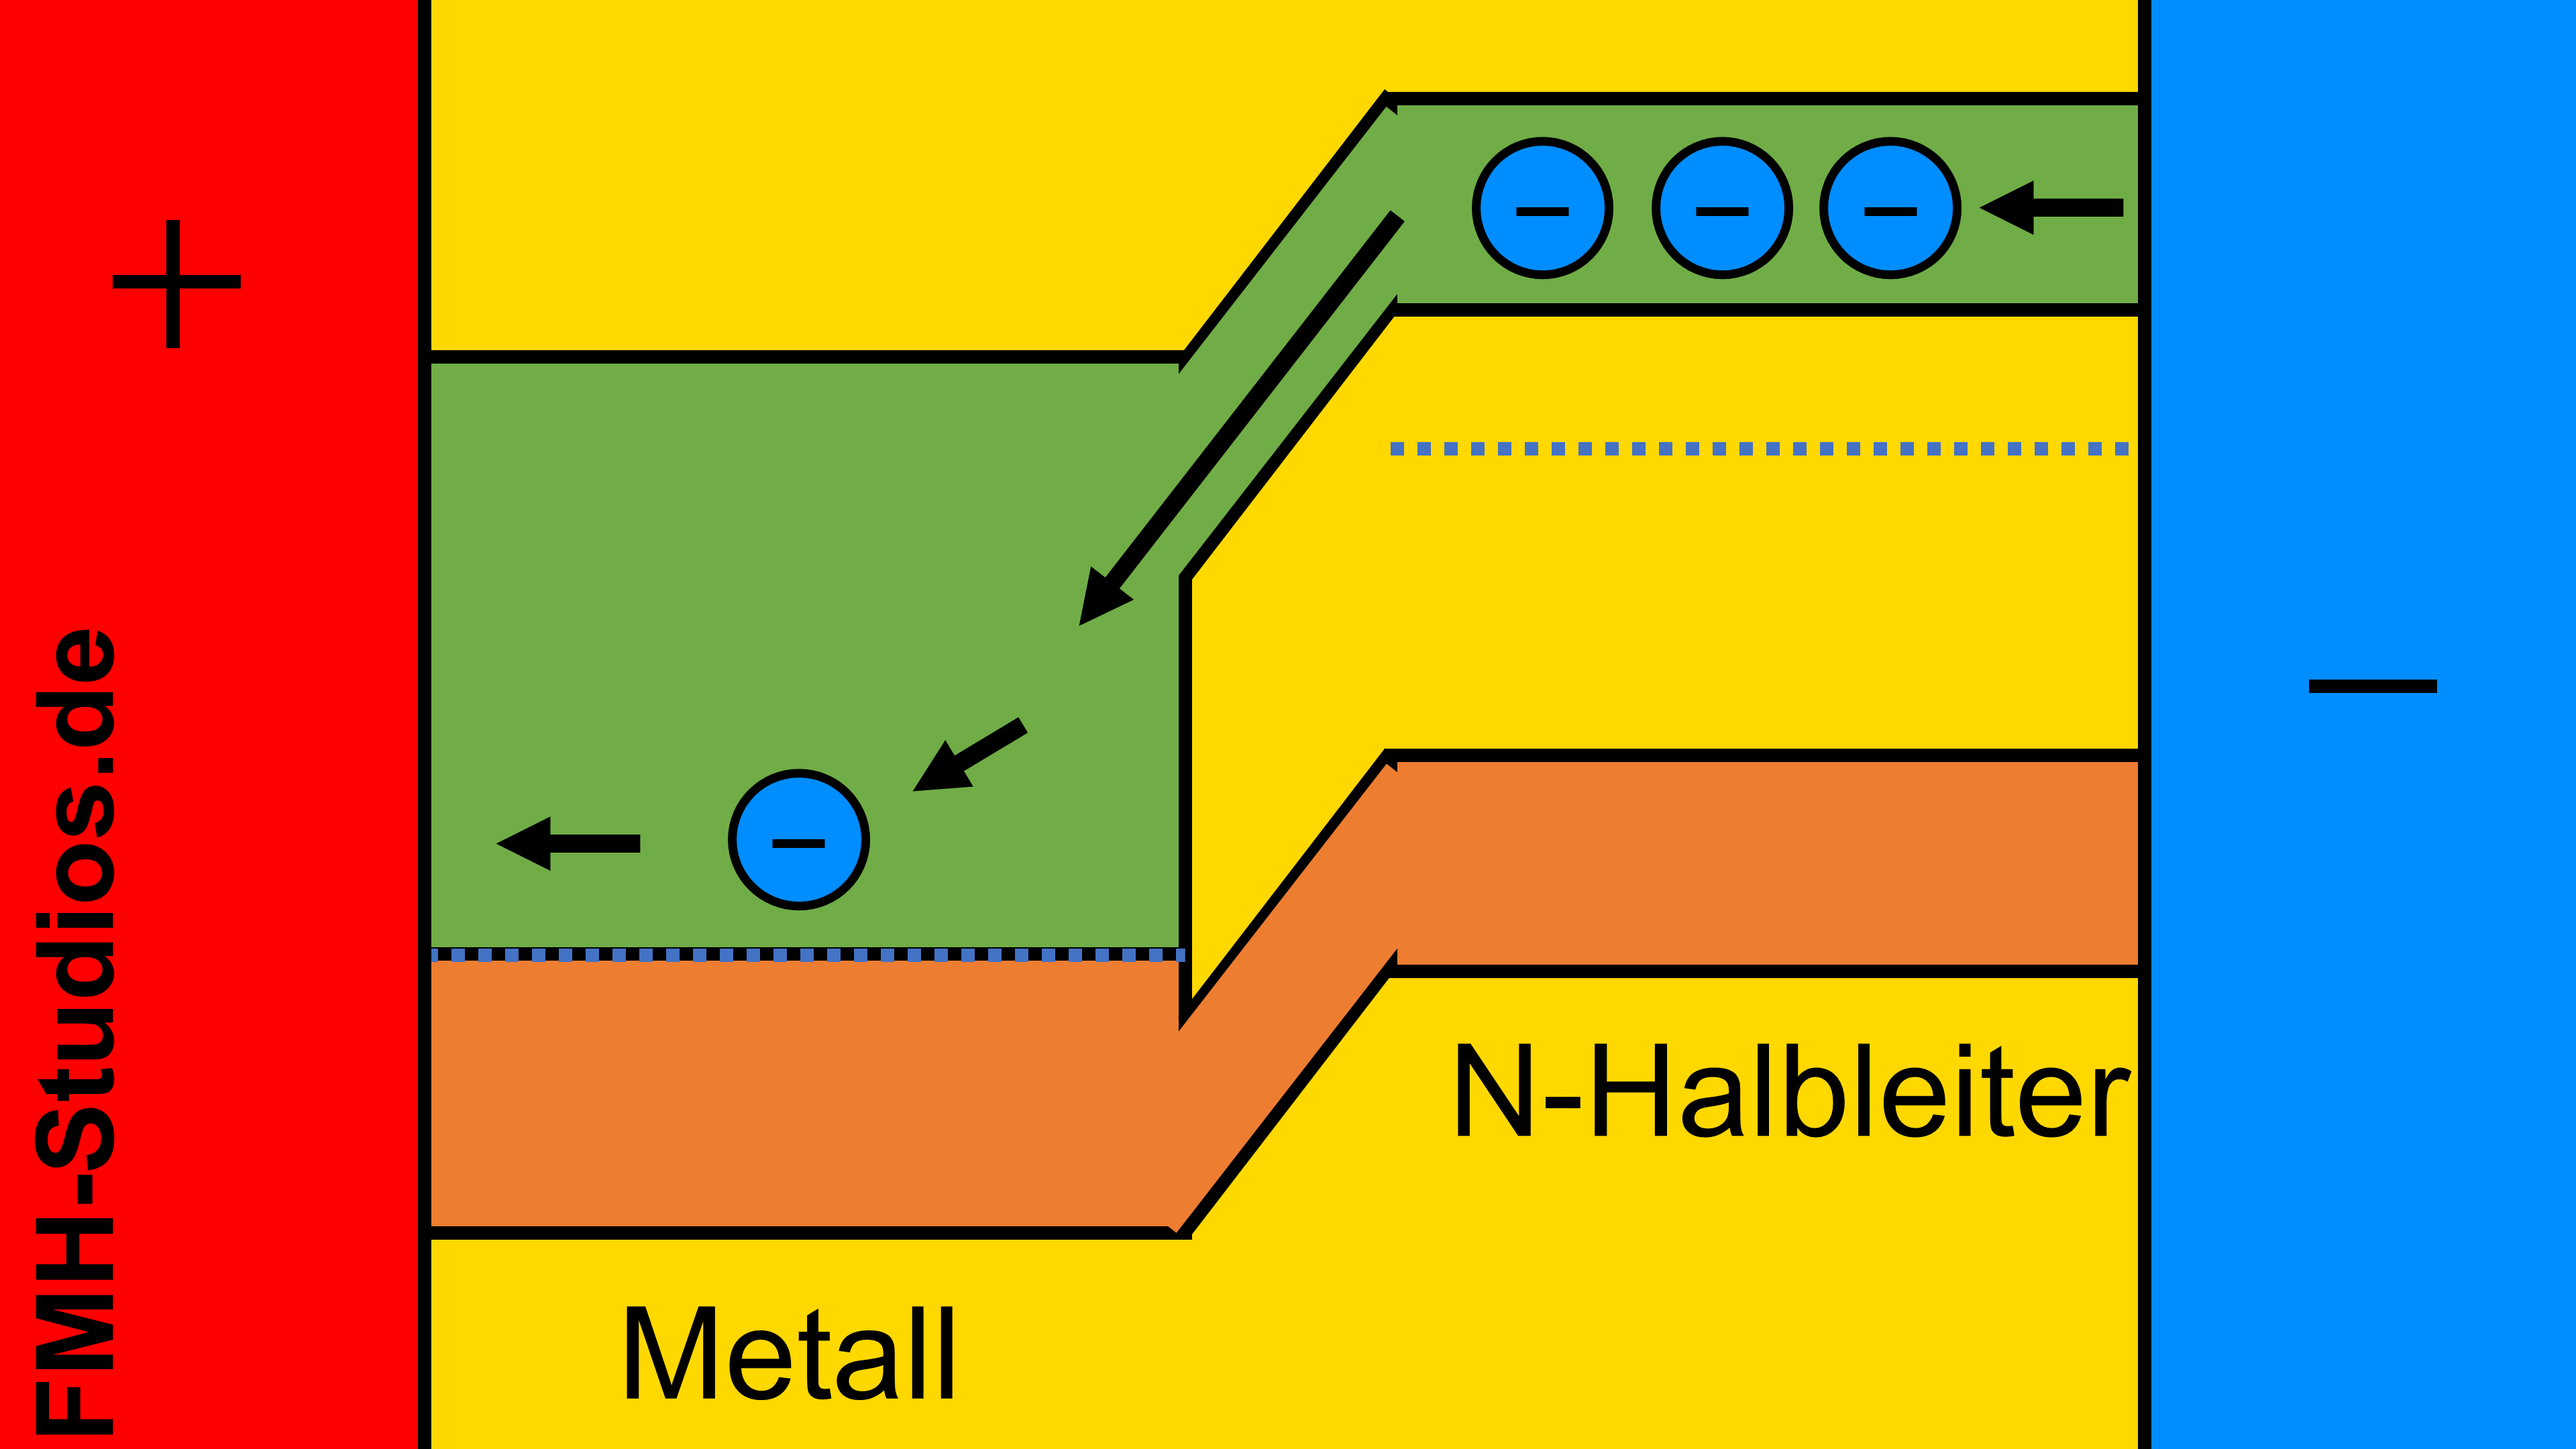 Diode - Halbleiter - PN-Übergang - Schottky-Diode - Schottky-Kontakt - Schottky - Flussrichtung - Flussbereich - Durchlassrichtung - Durchlassbereich - n dotiert - N-Halbleiter - Bändermodell